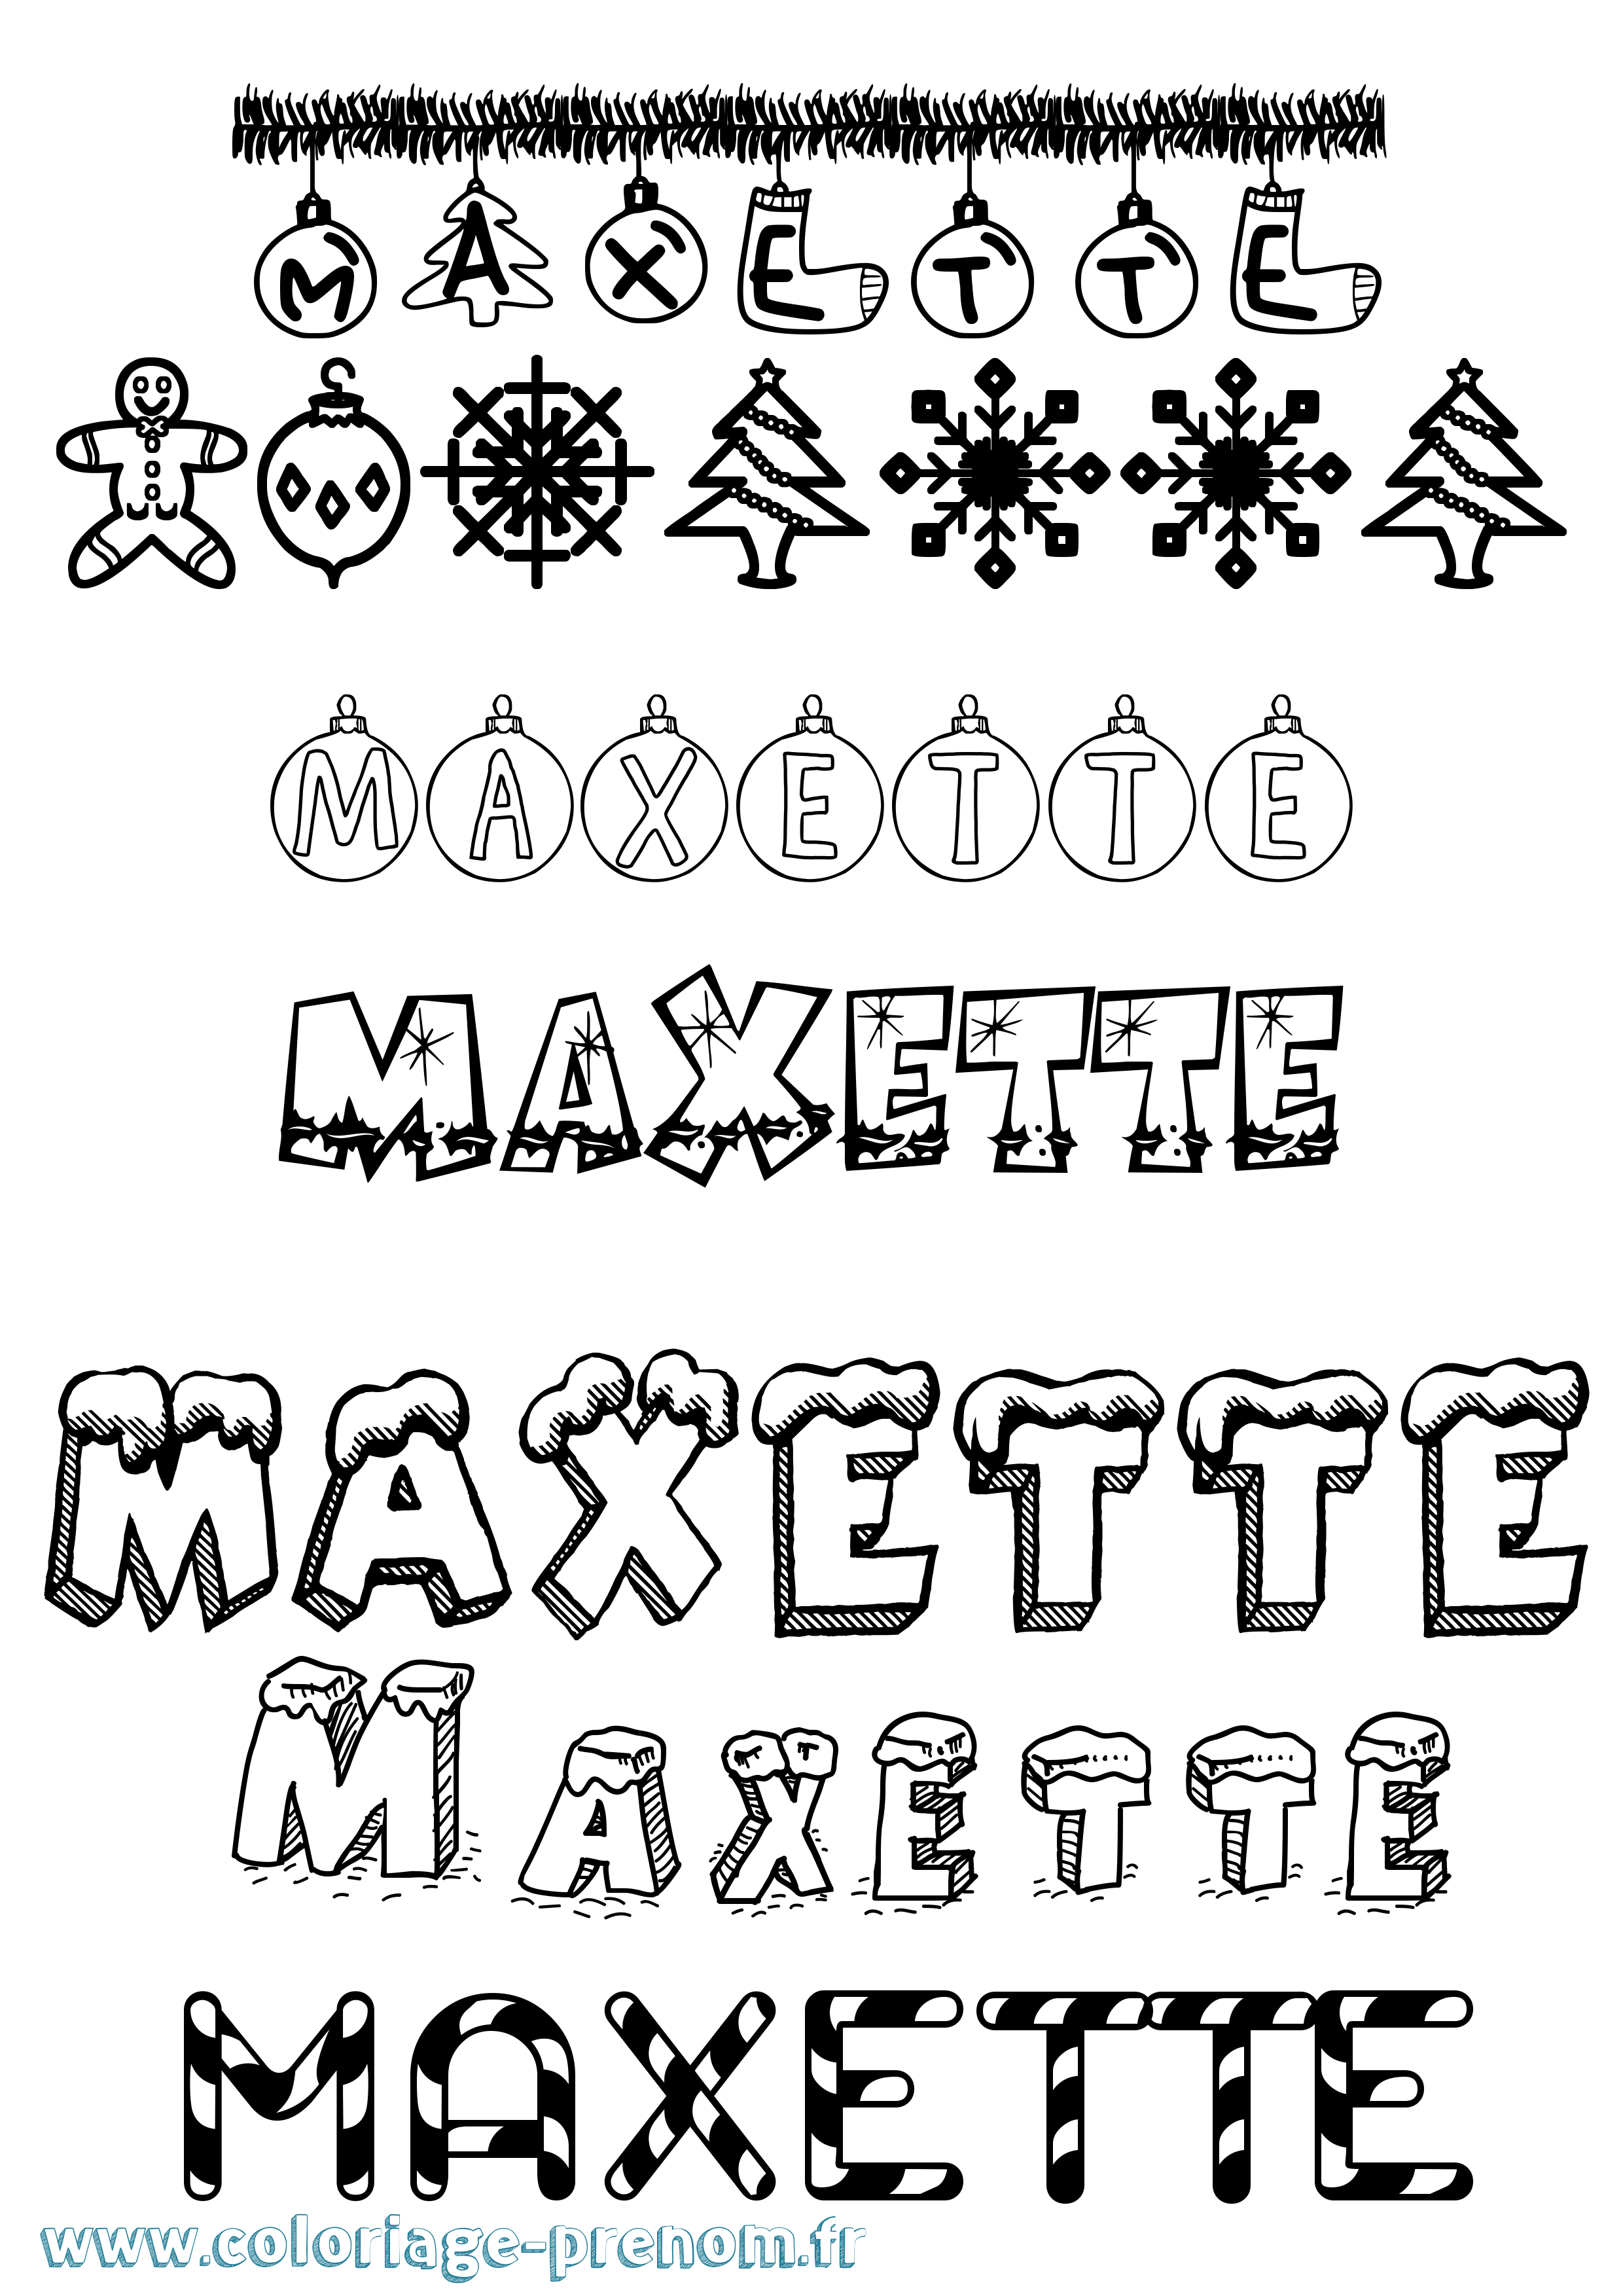 Coloriage prénom Maxette Noël